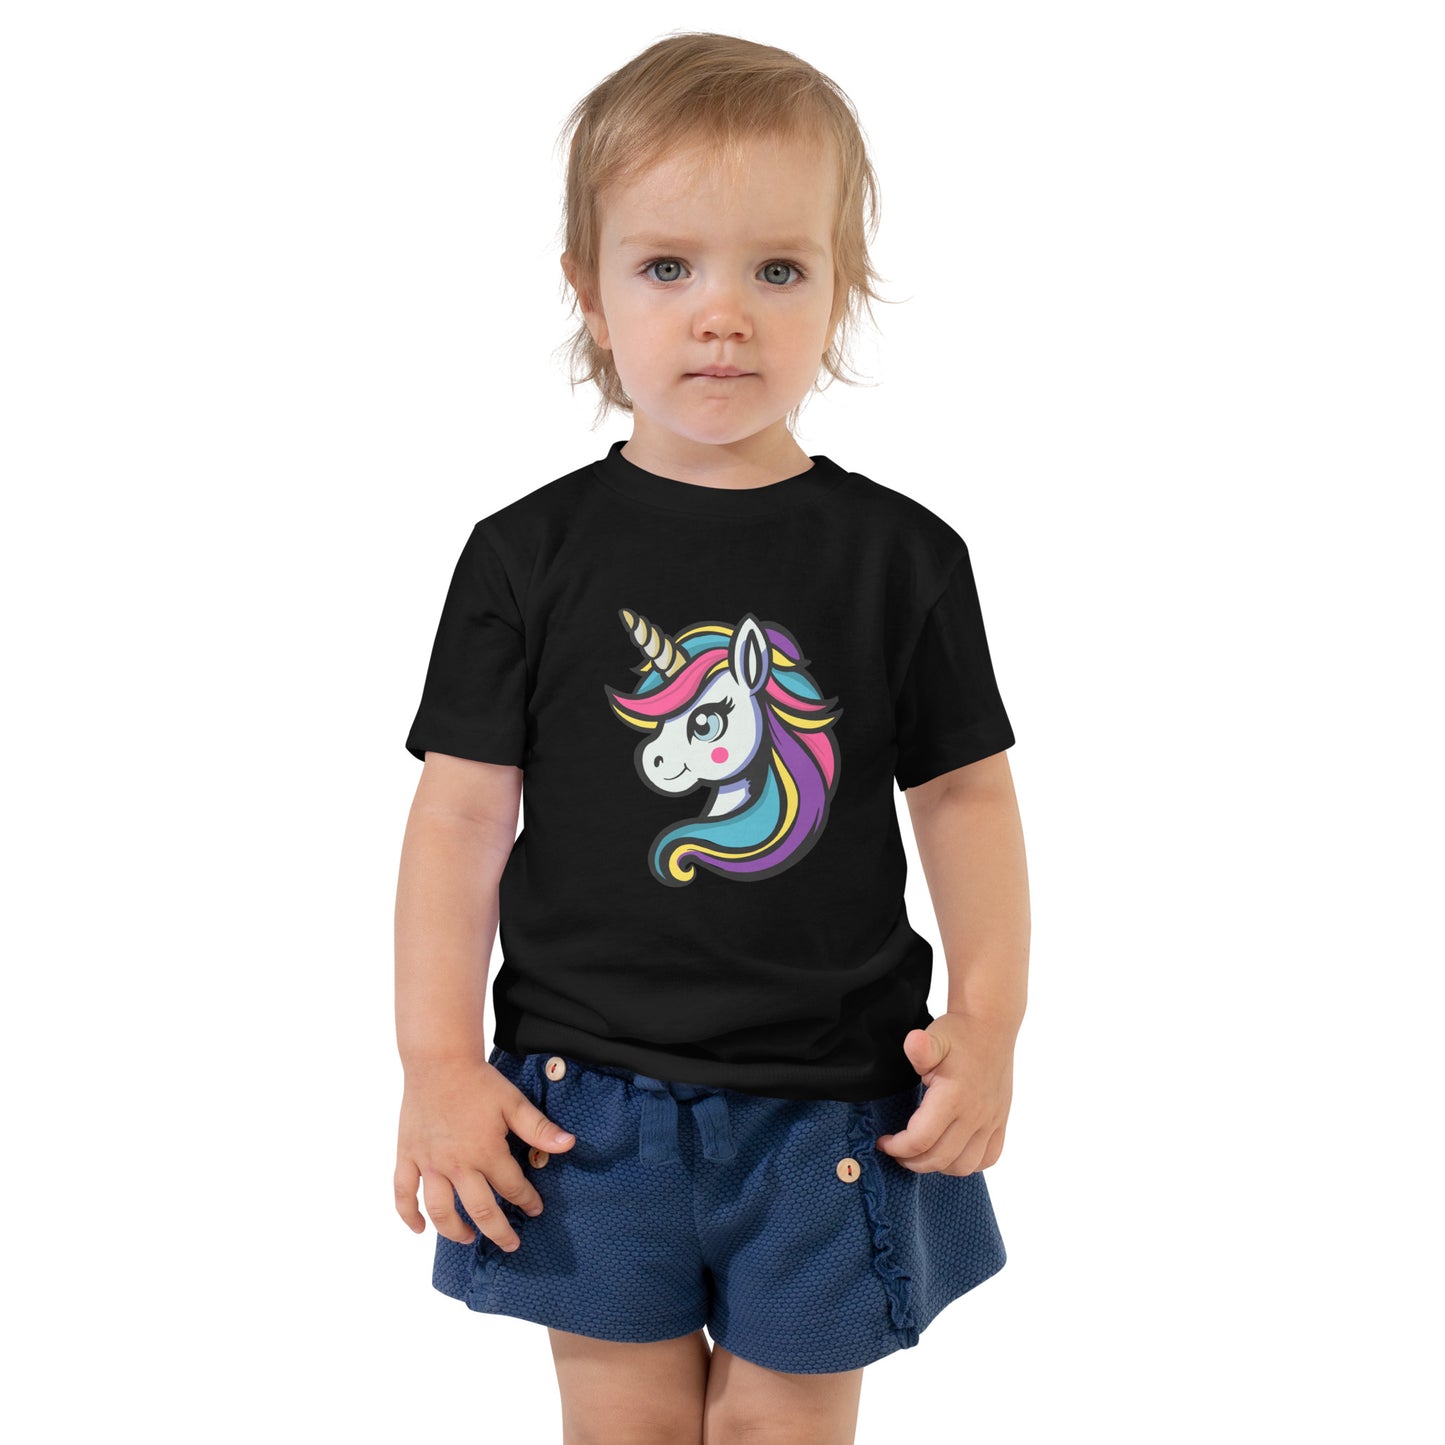 يونيكورن - قميص بأكمام قصيرة للأطفال